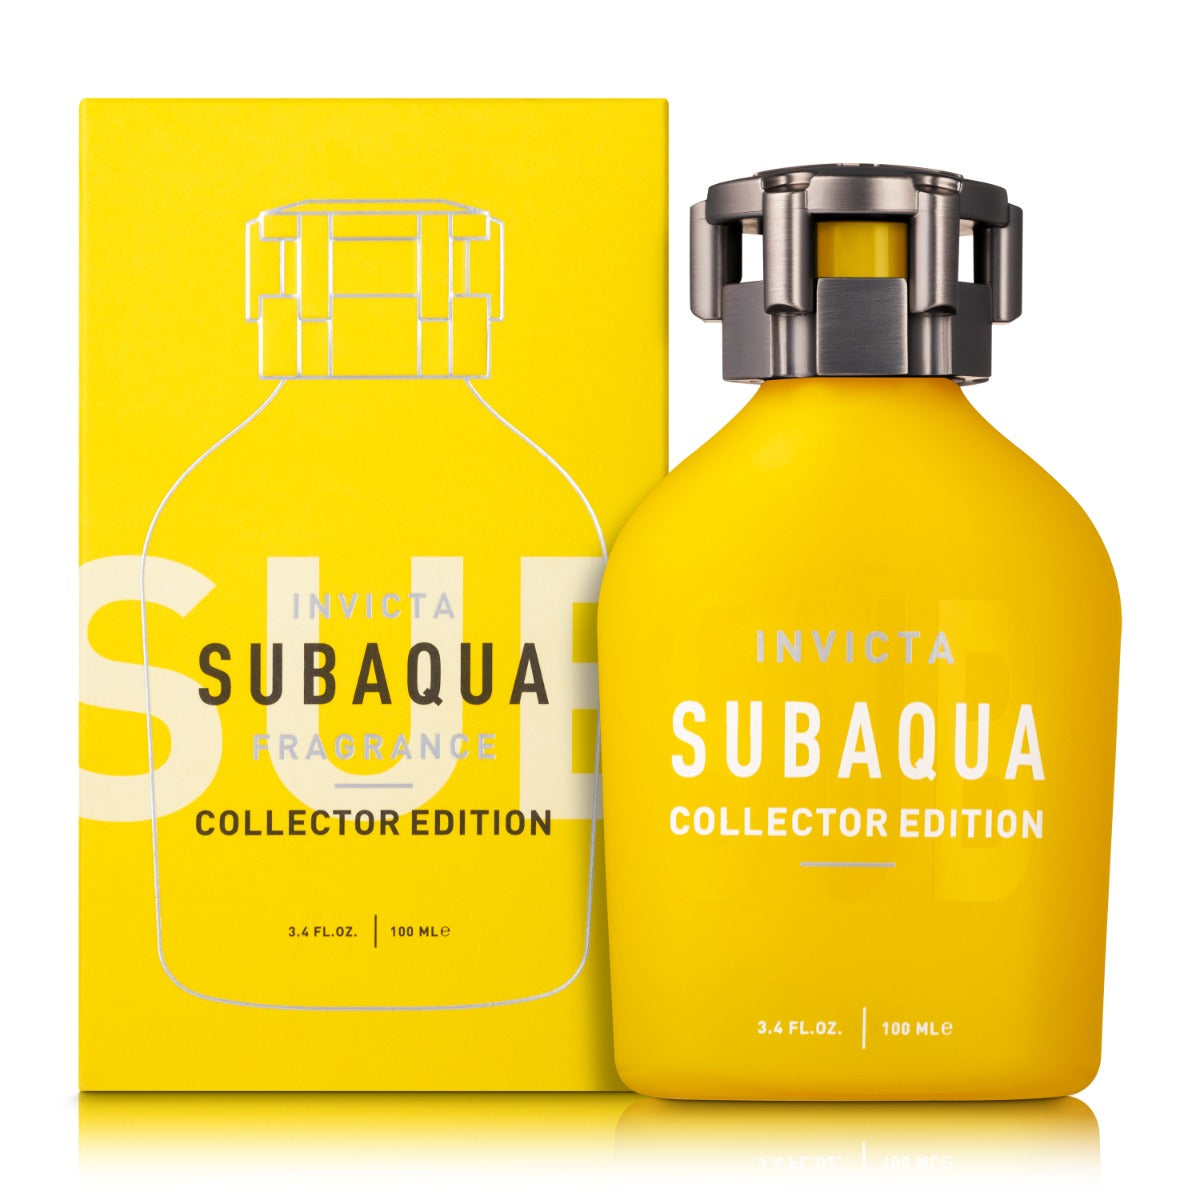 Invicta Subaqua Fragrance Collector Edition EDT 3.4 oz 100 ml For Men